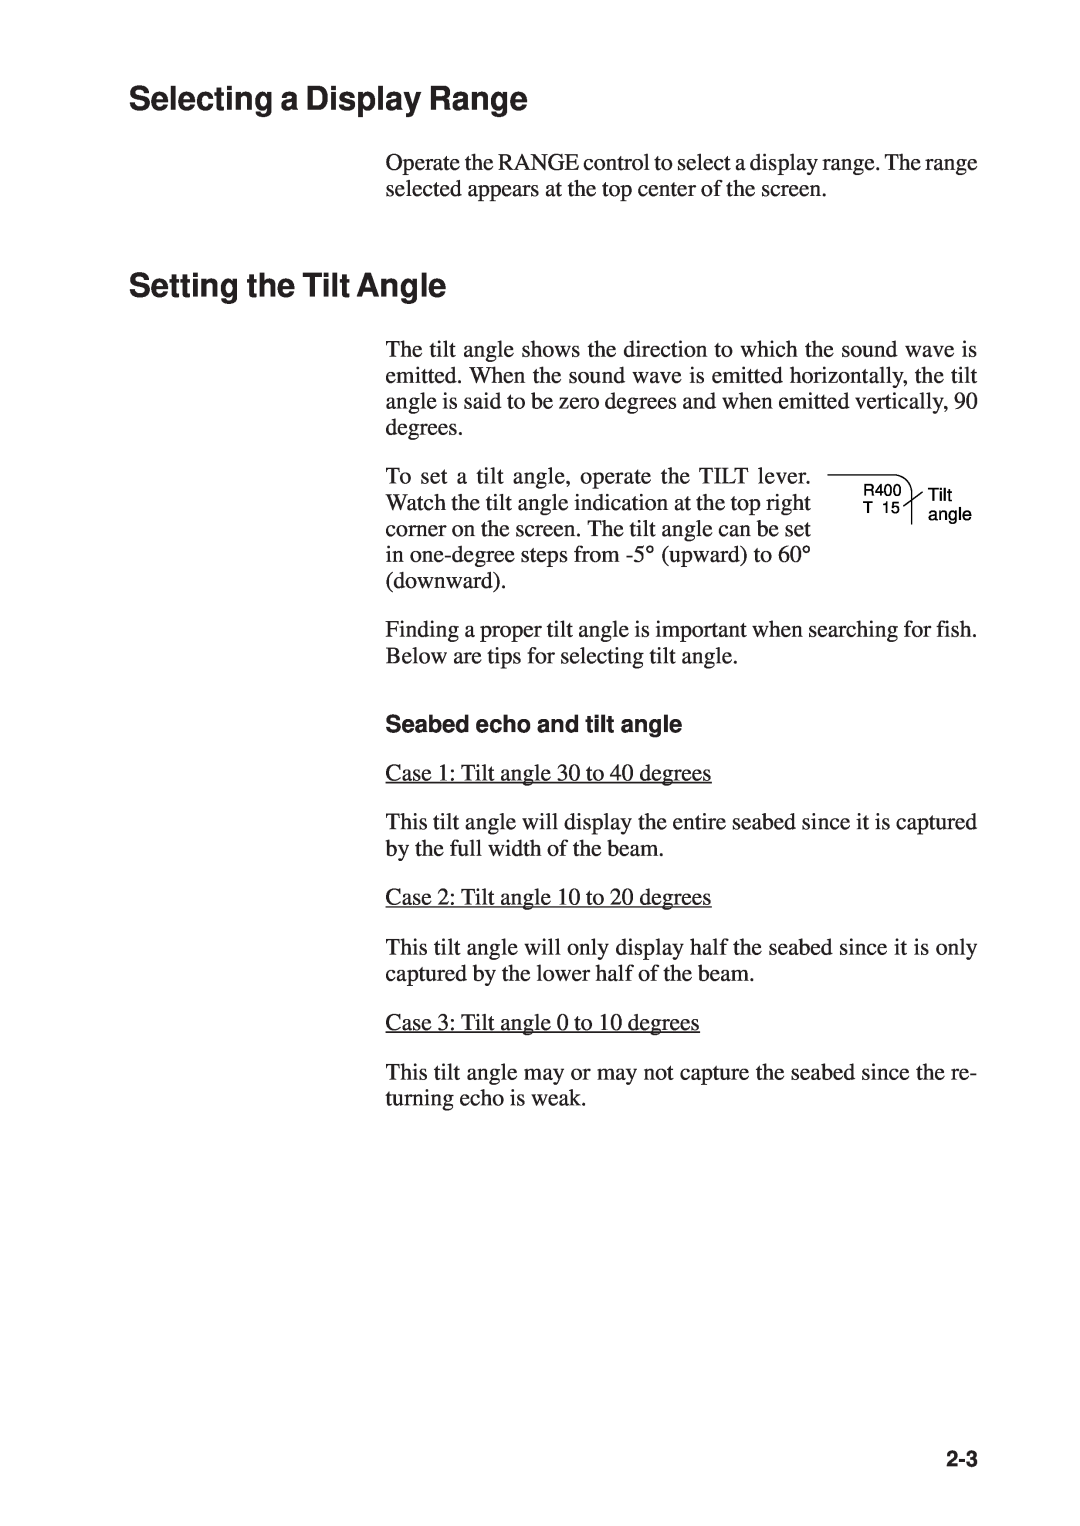 Furuno CSH-53 manual Selecting a Display Range, Setting the Tilt Angle, Seabed echo and tilt angle 